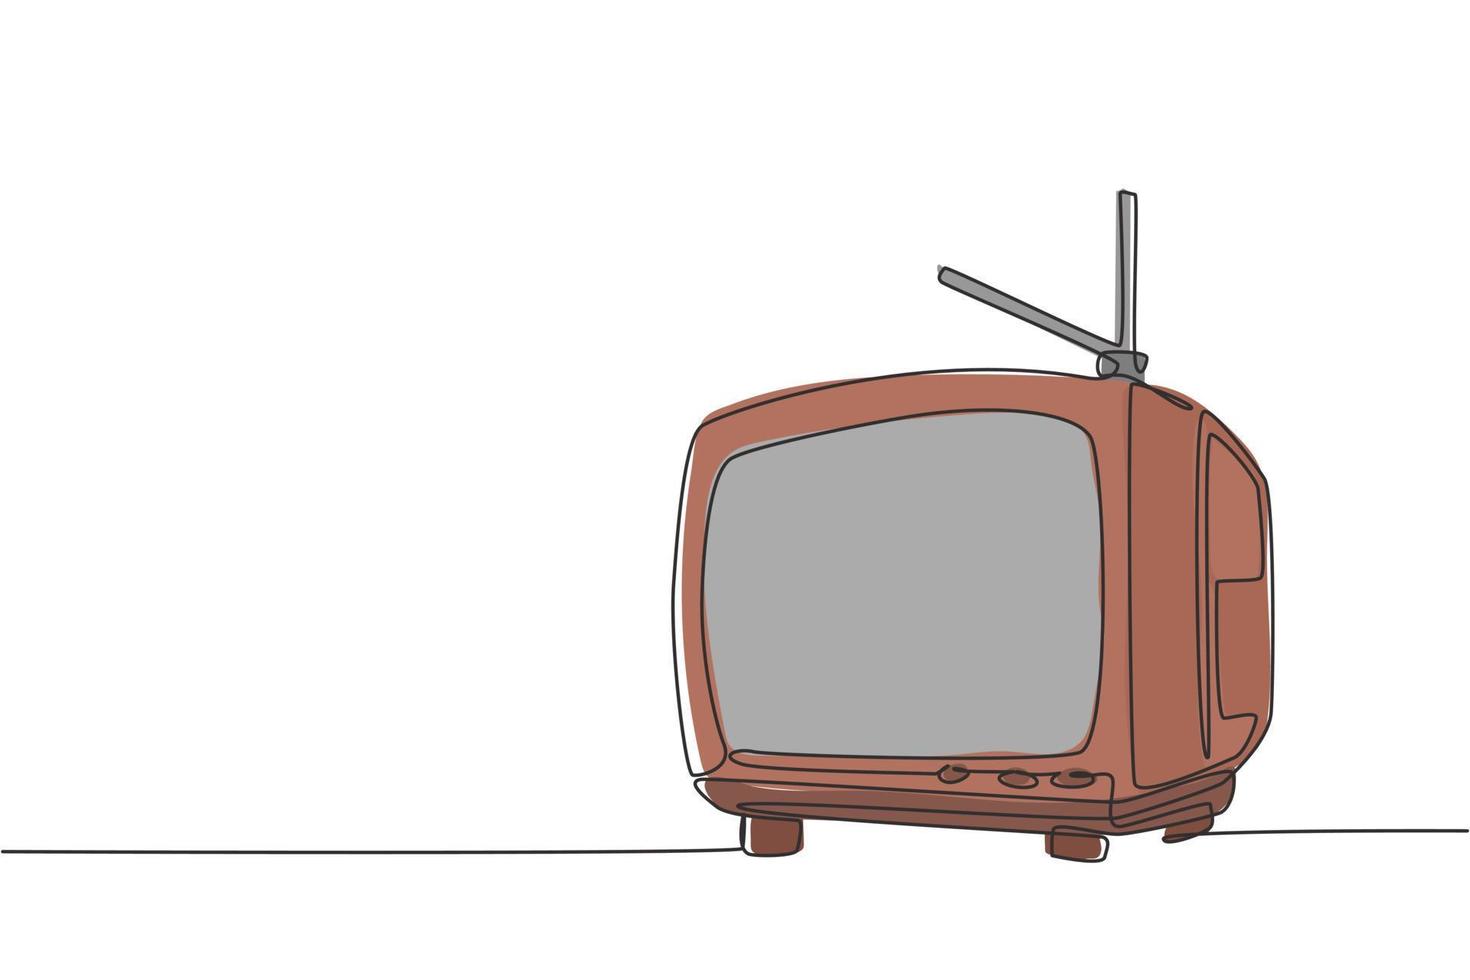 disegno a linea continua di una vecchia tv retrò con antenna interna. classico vintage televisione analogica concetto una linea grafica disegnare disegno vettoriale illustrazione